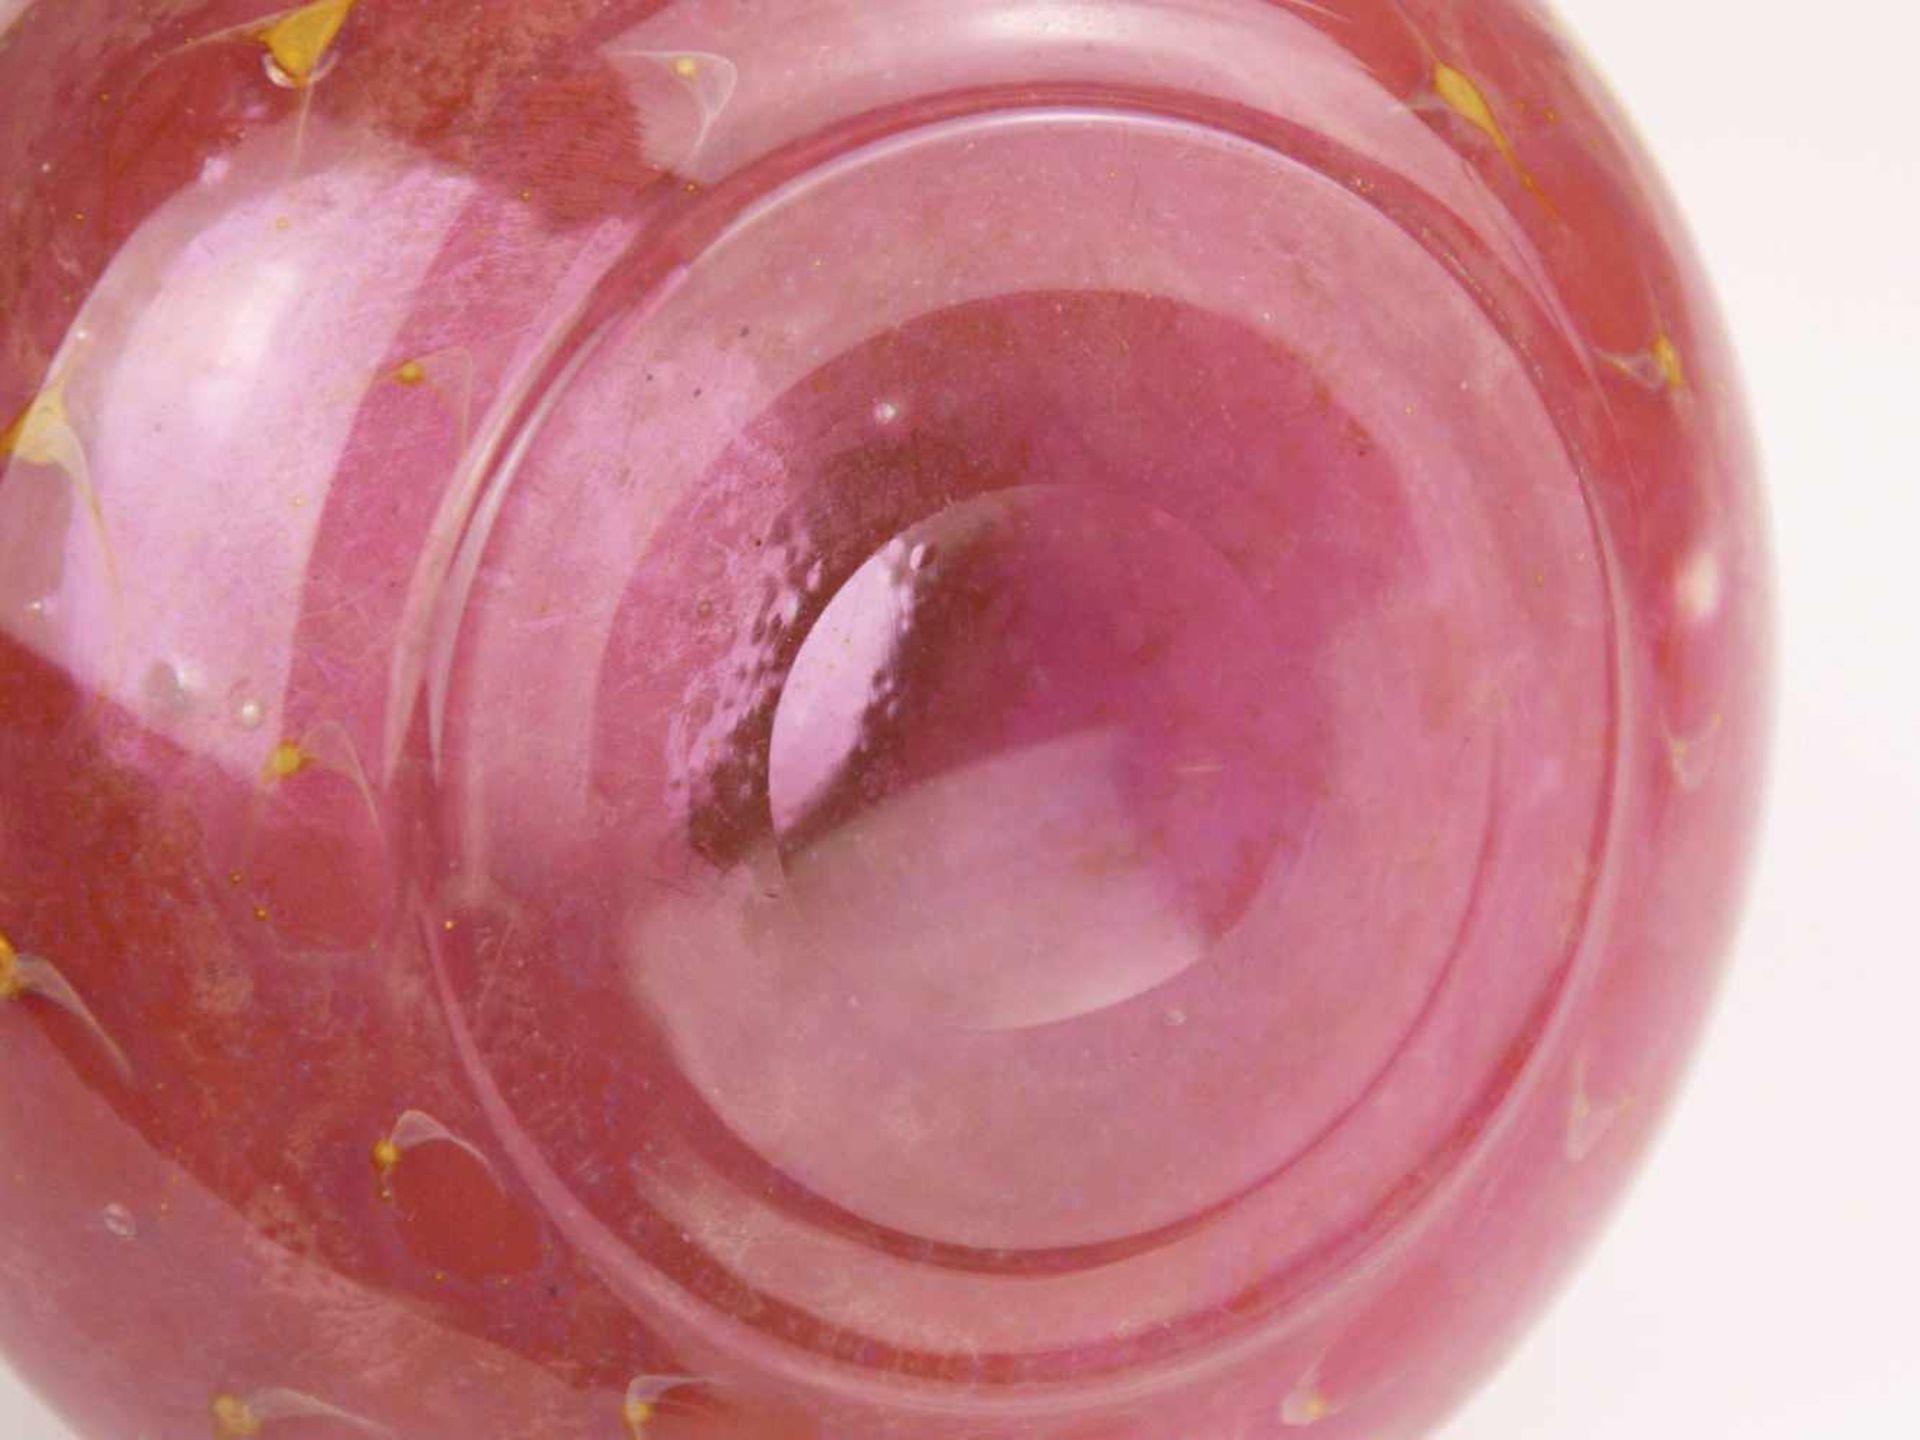 Vase - Klarglas, rosa unterfangen, eingeschmolzene goldfarbene Luftblasen, gedrückte Kugelform, - Bild 5 aus 5